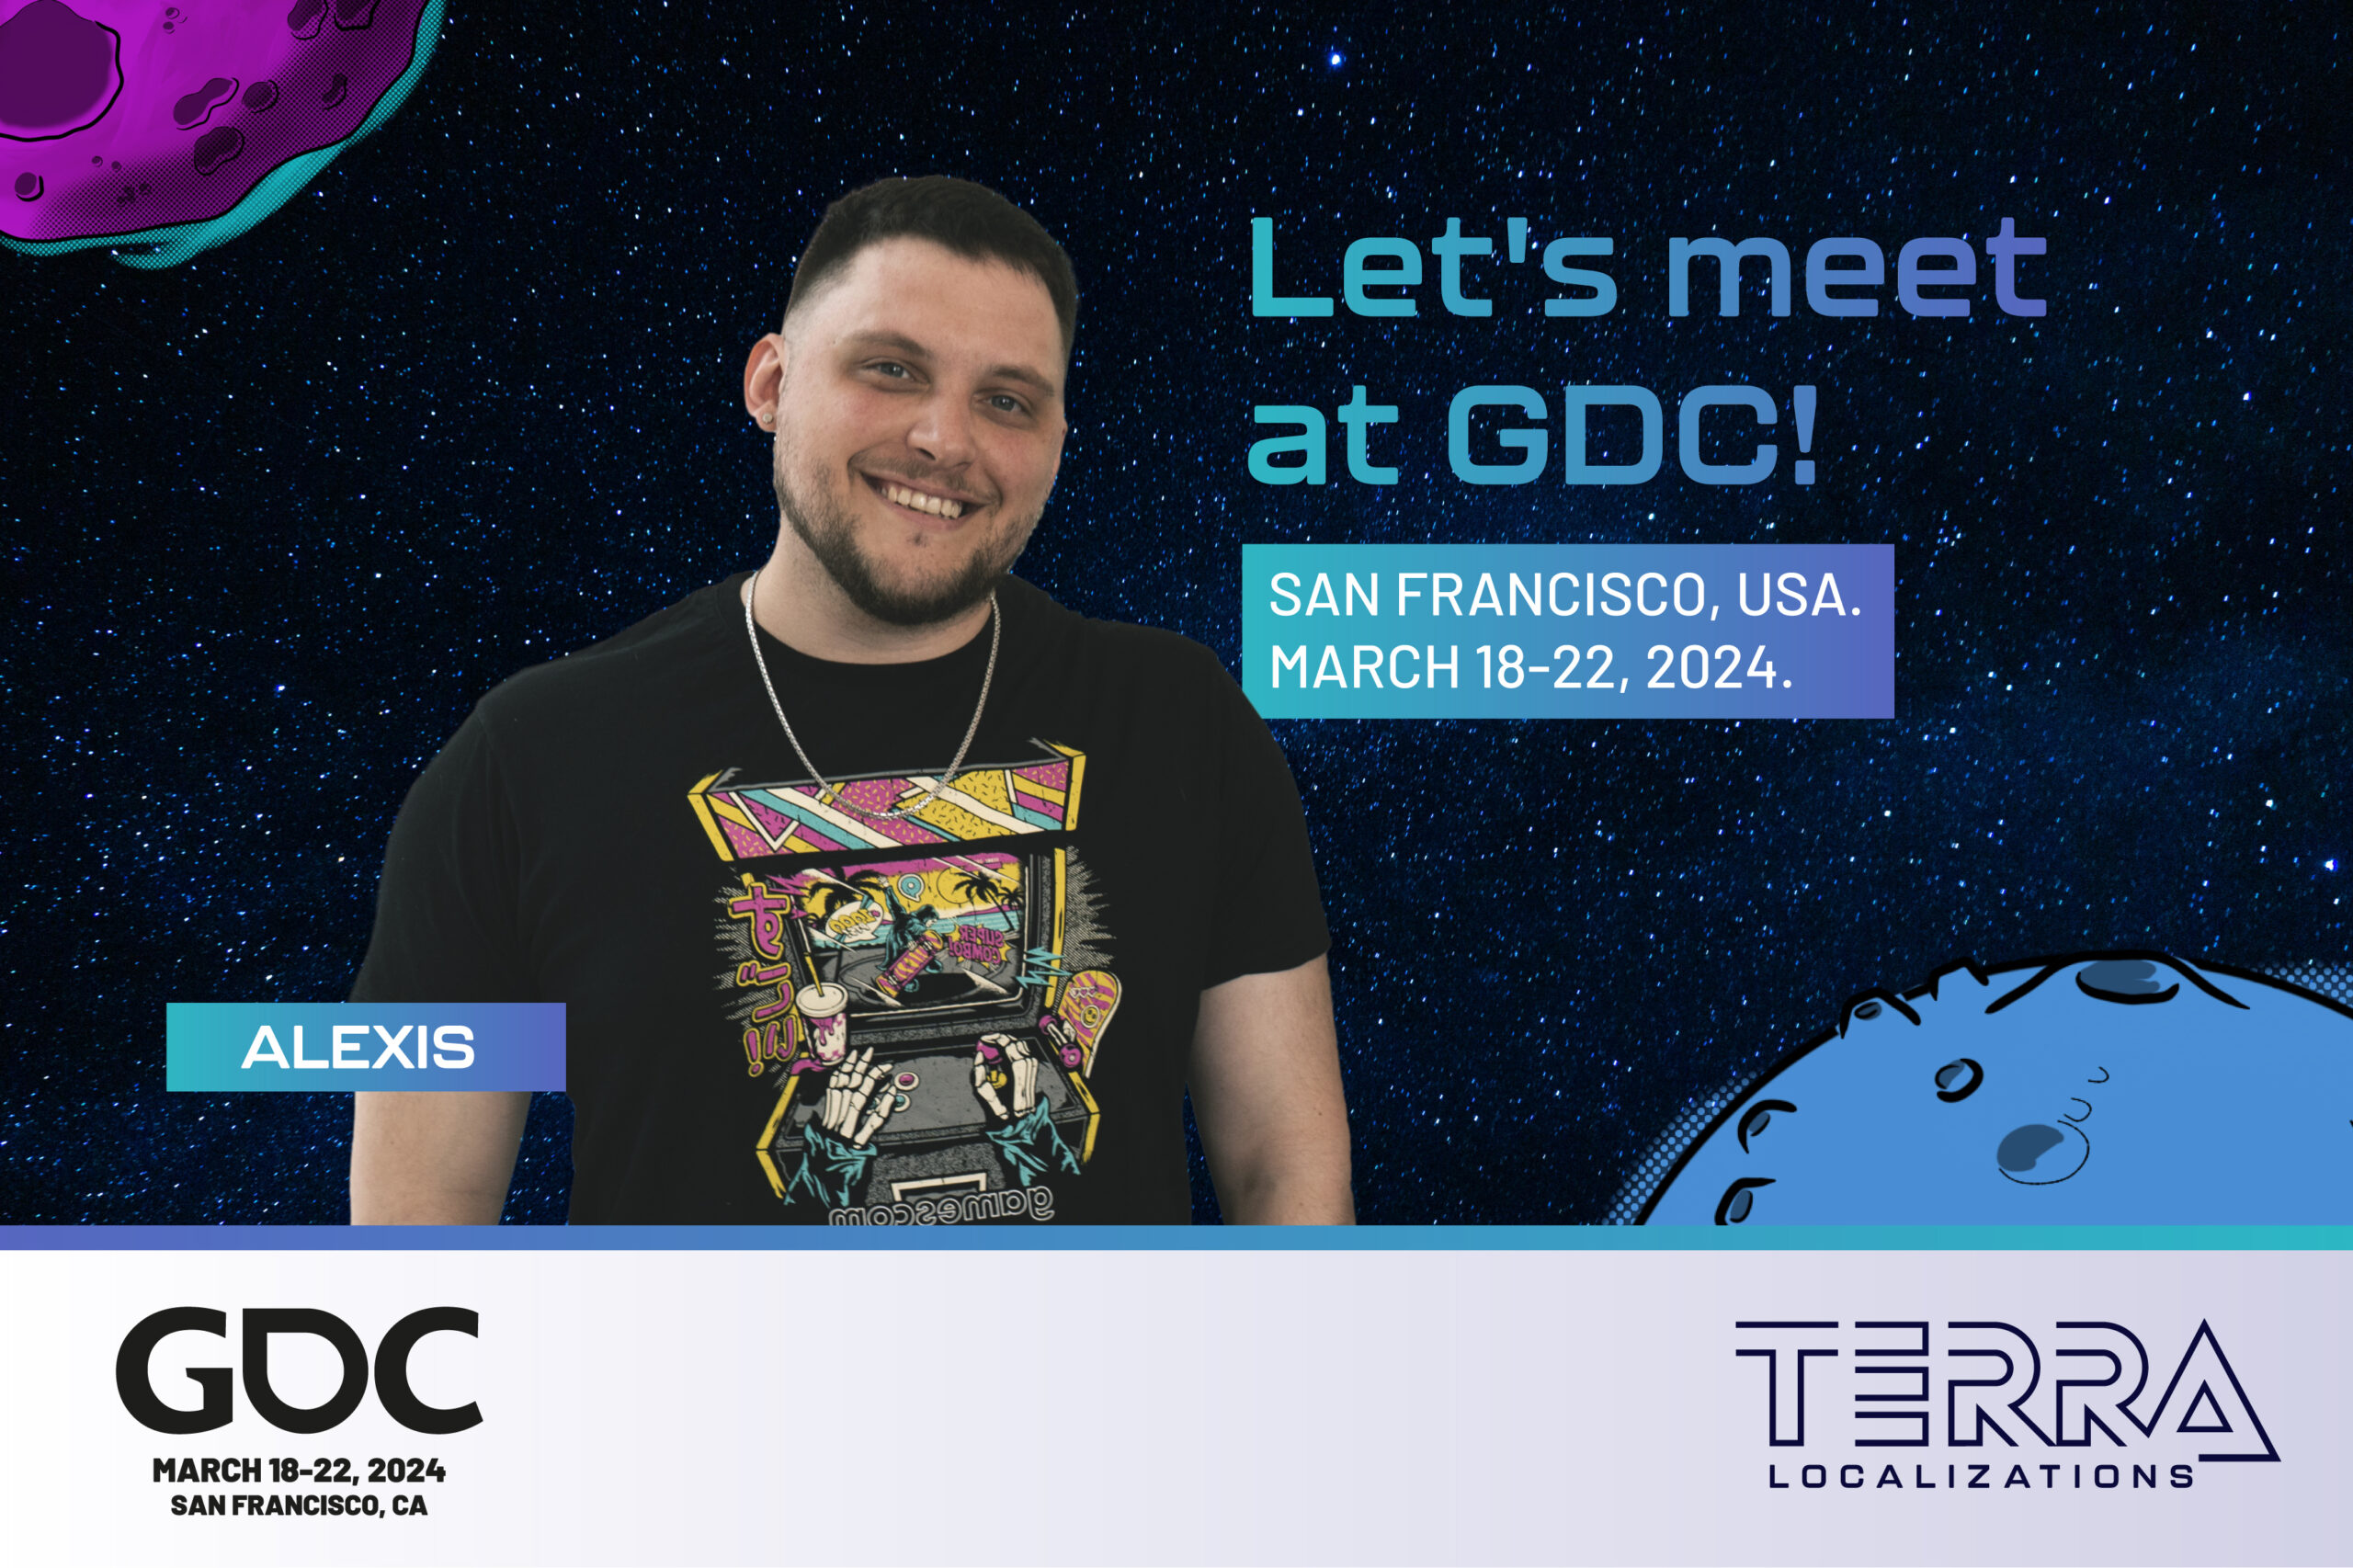 Let's meet at GDC 2024!